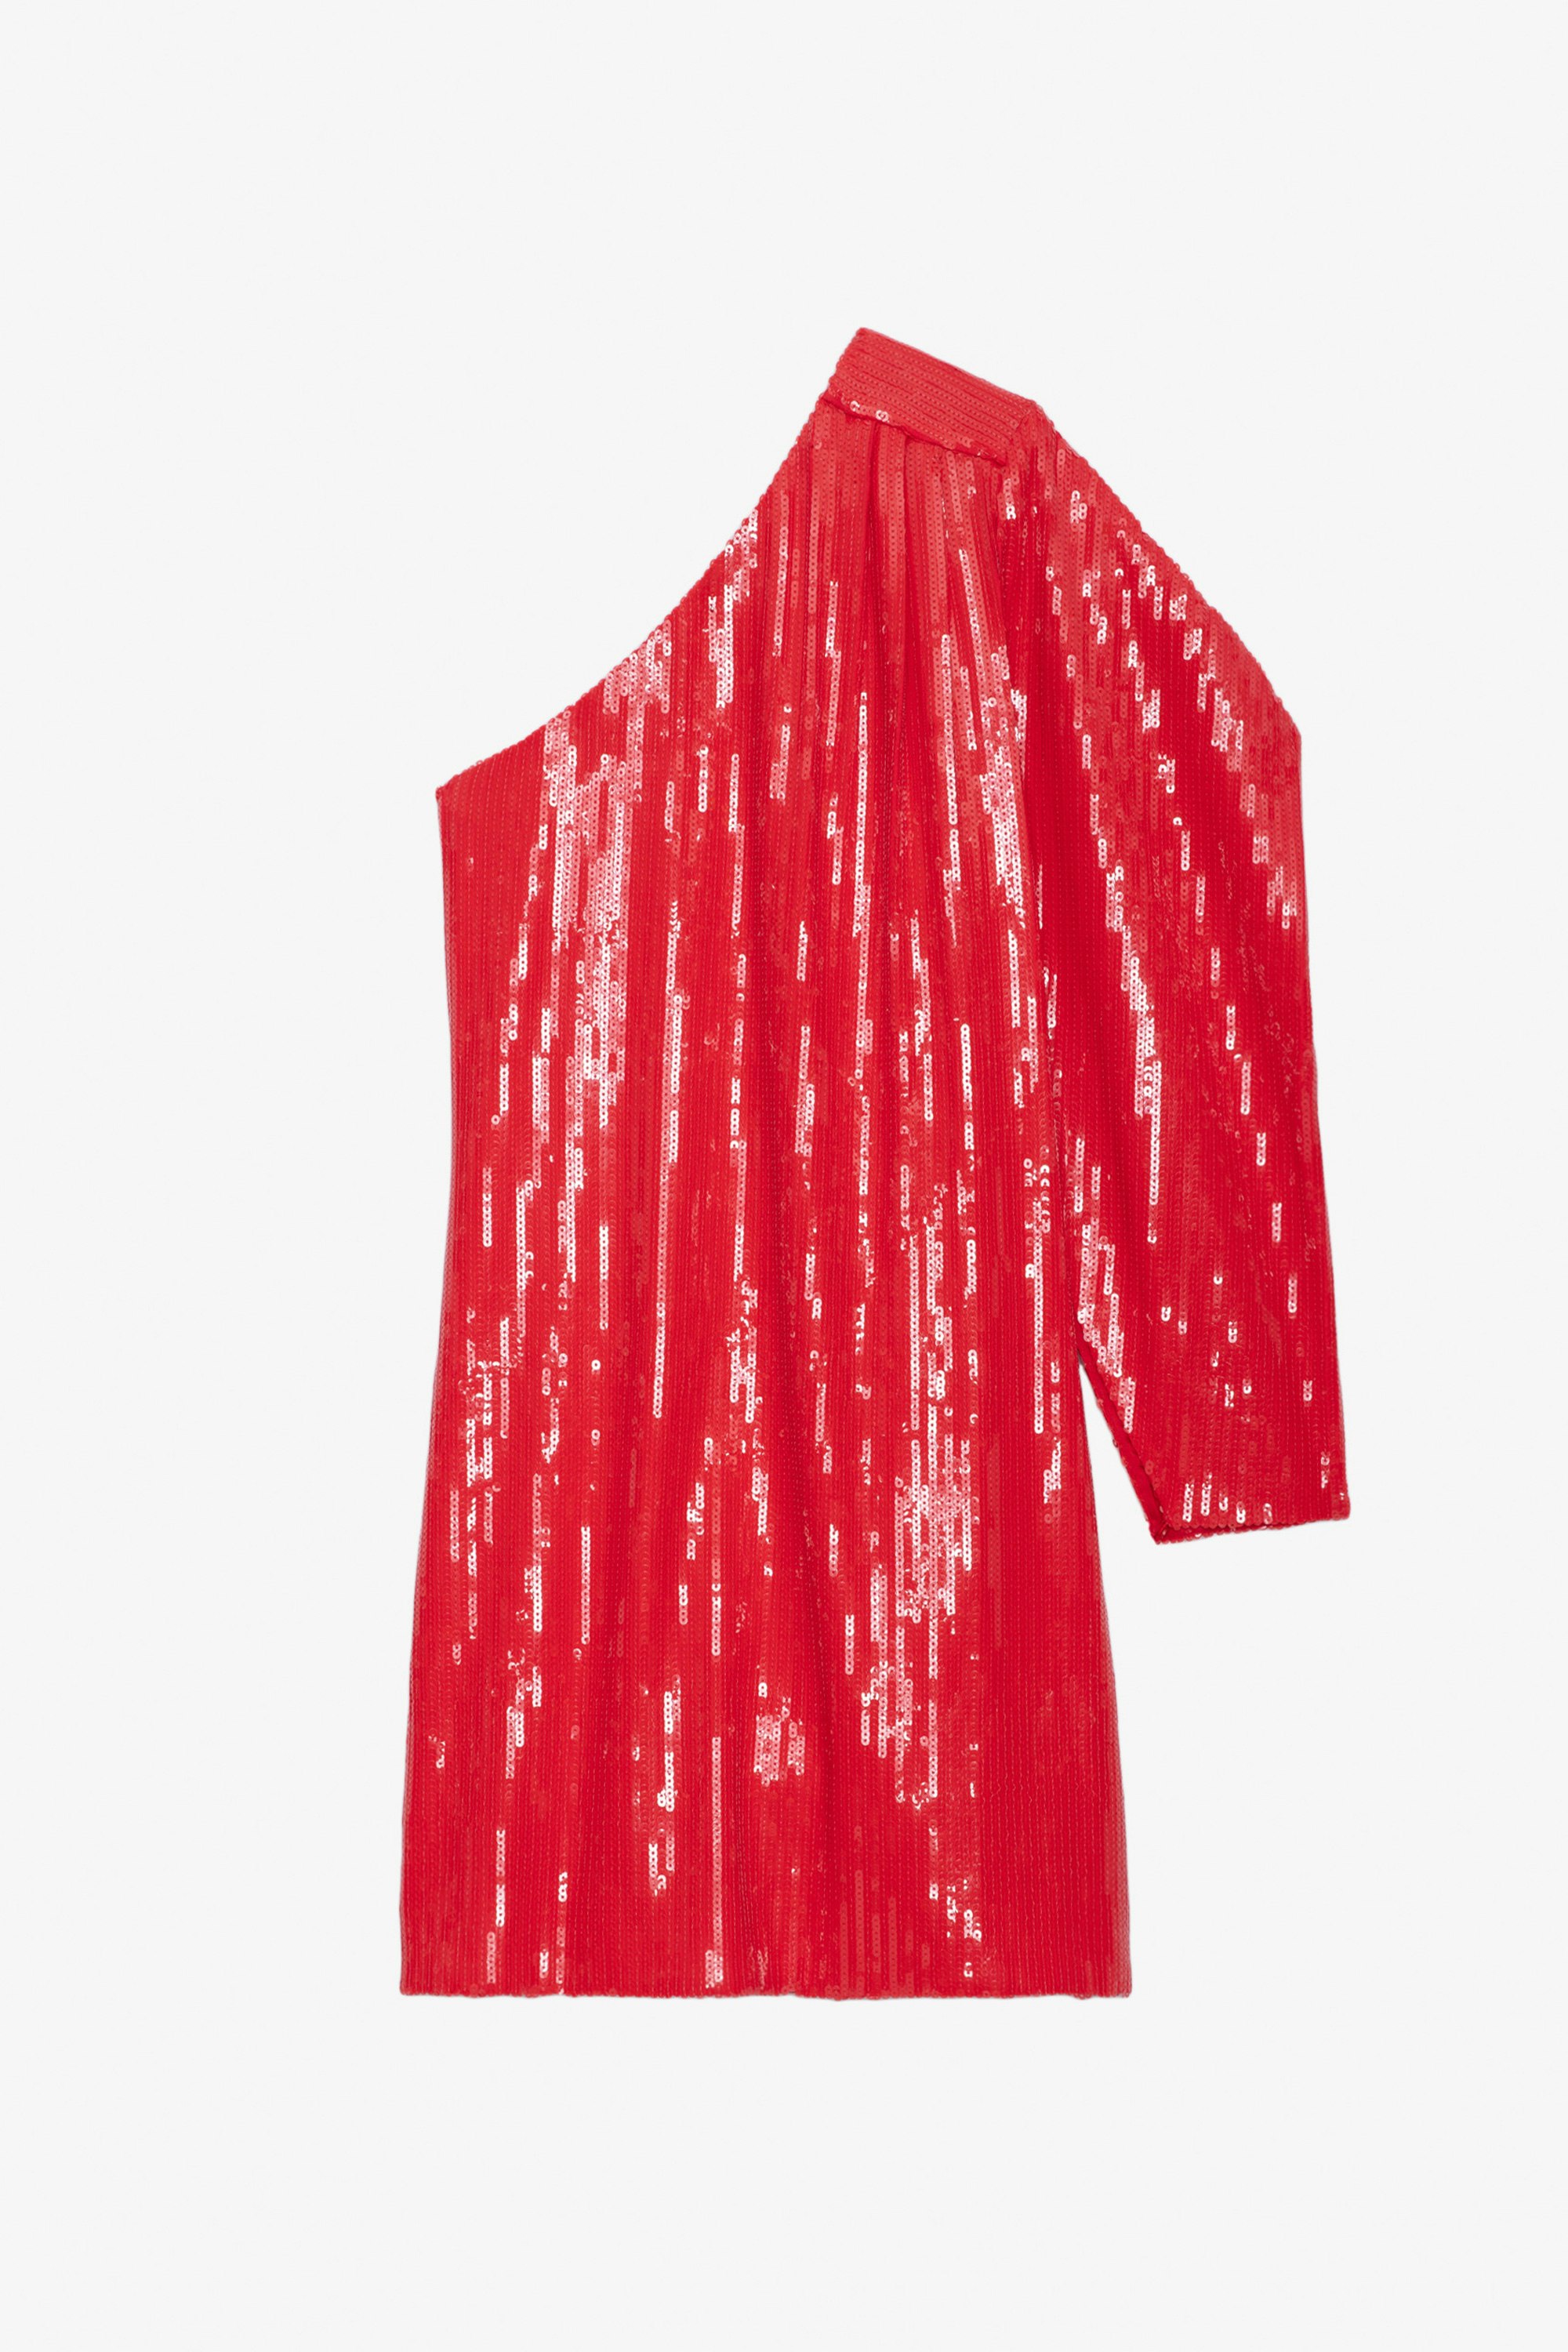 Kleid Roely Pailletten - Kurzes, rotes Kleid mit Pailletten und asymmetrischem, drapiertem Ärmel.